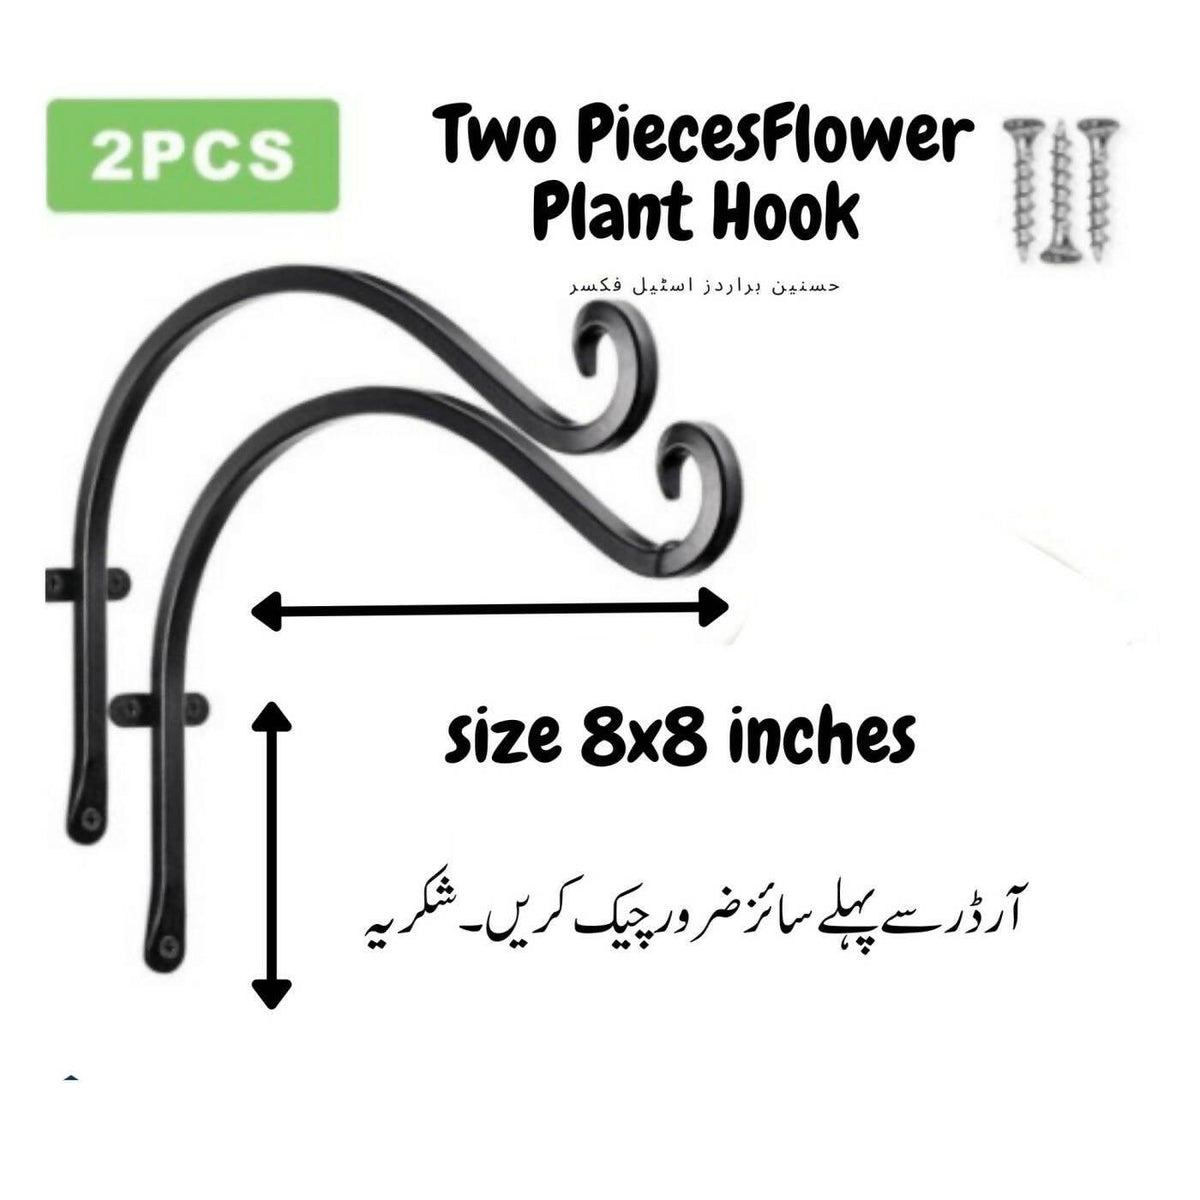 2 Pcs New Iron Garden Wall Hanging Flower Plant Hook Pot Bracket Hook Shelf Holder Stand Black - ValueBox